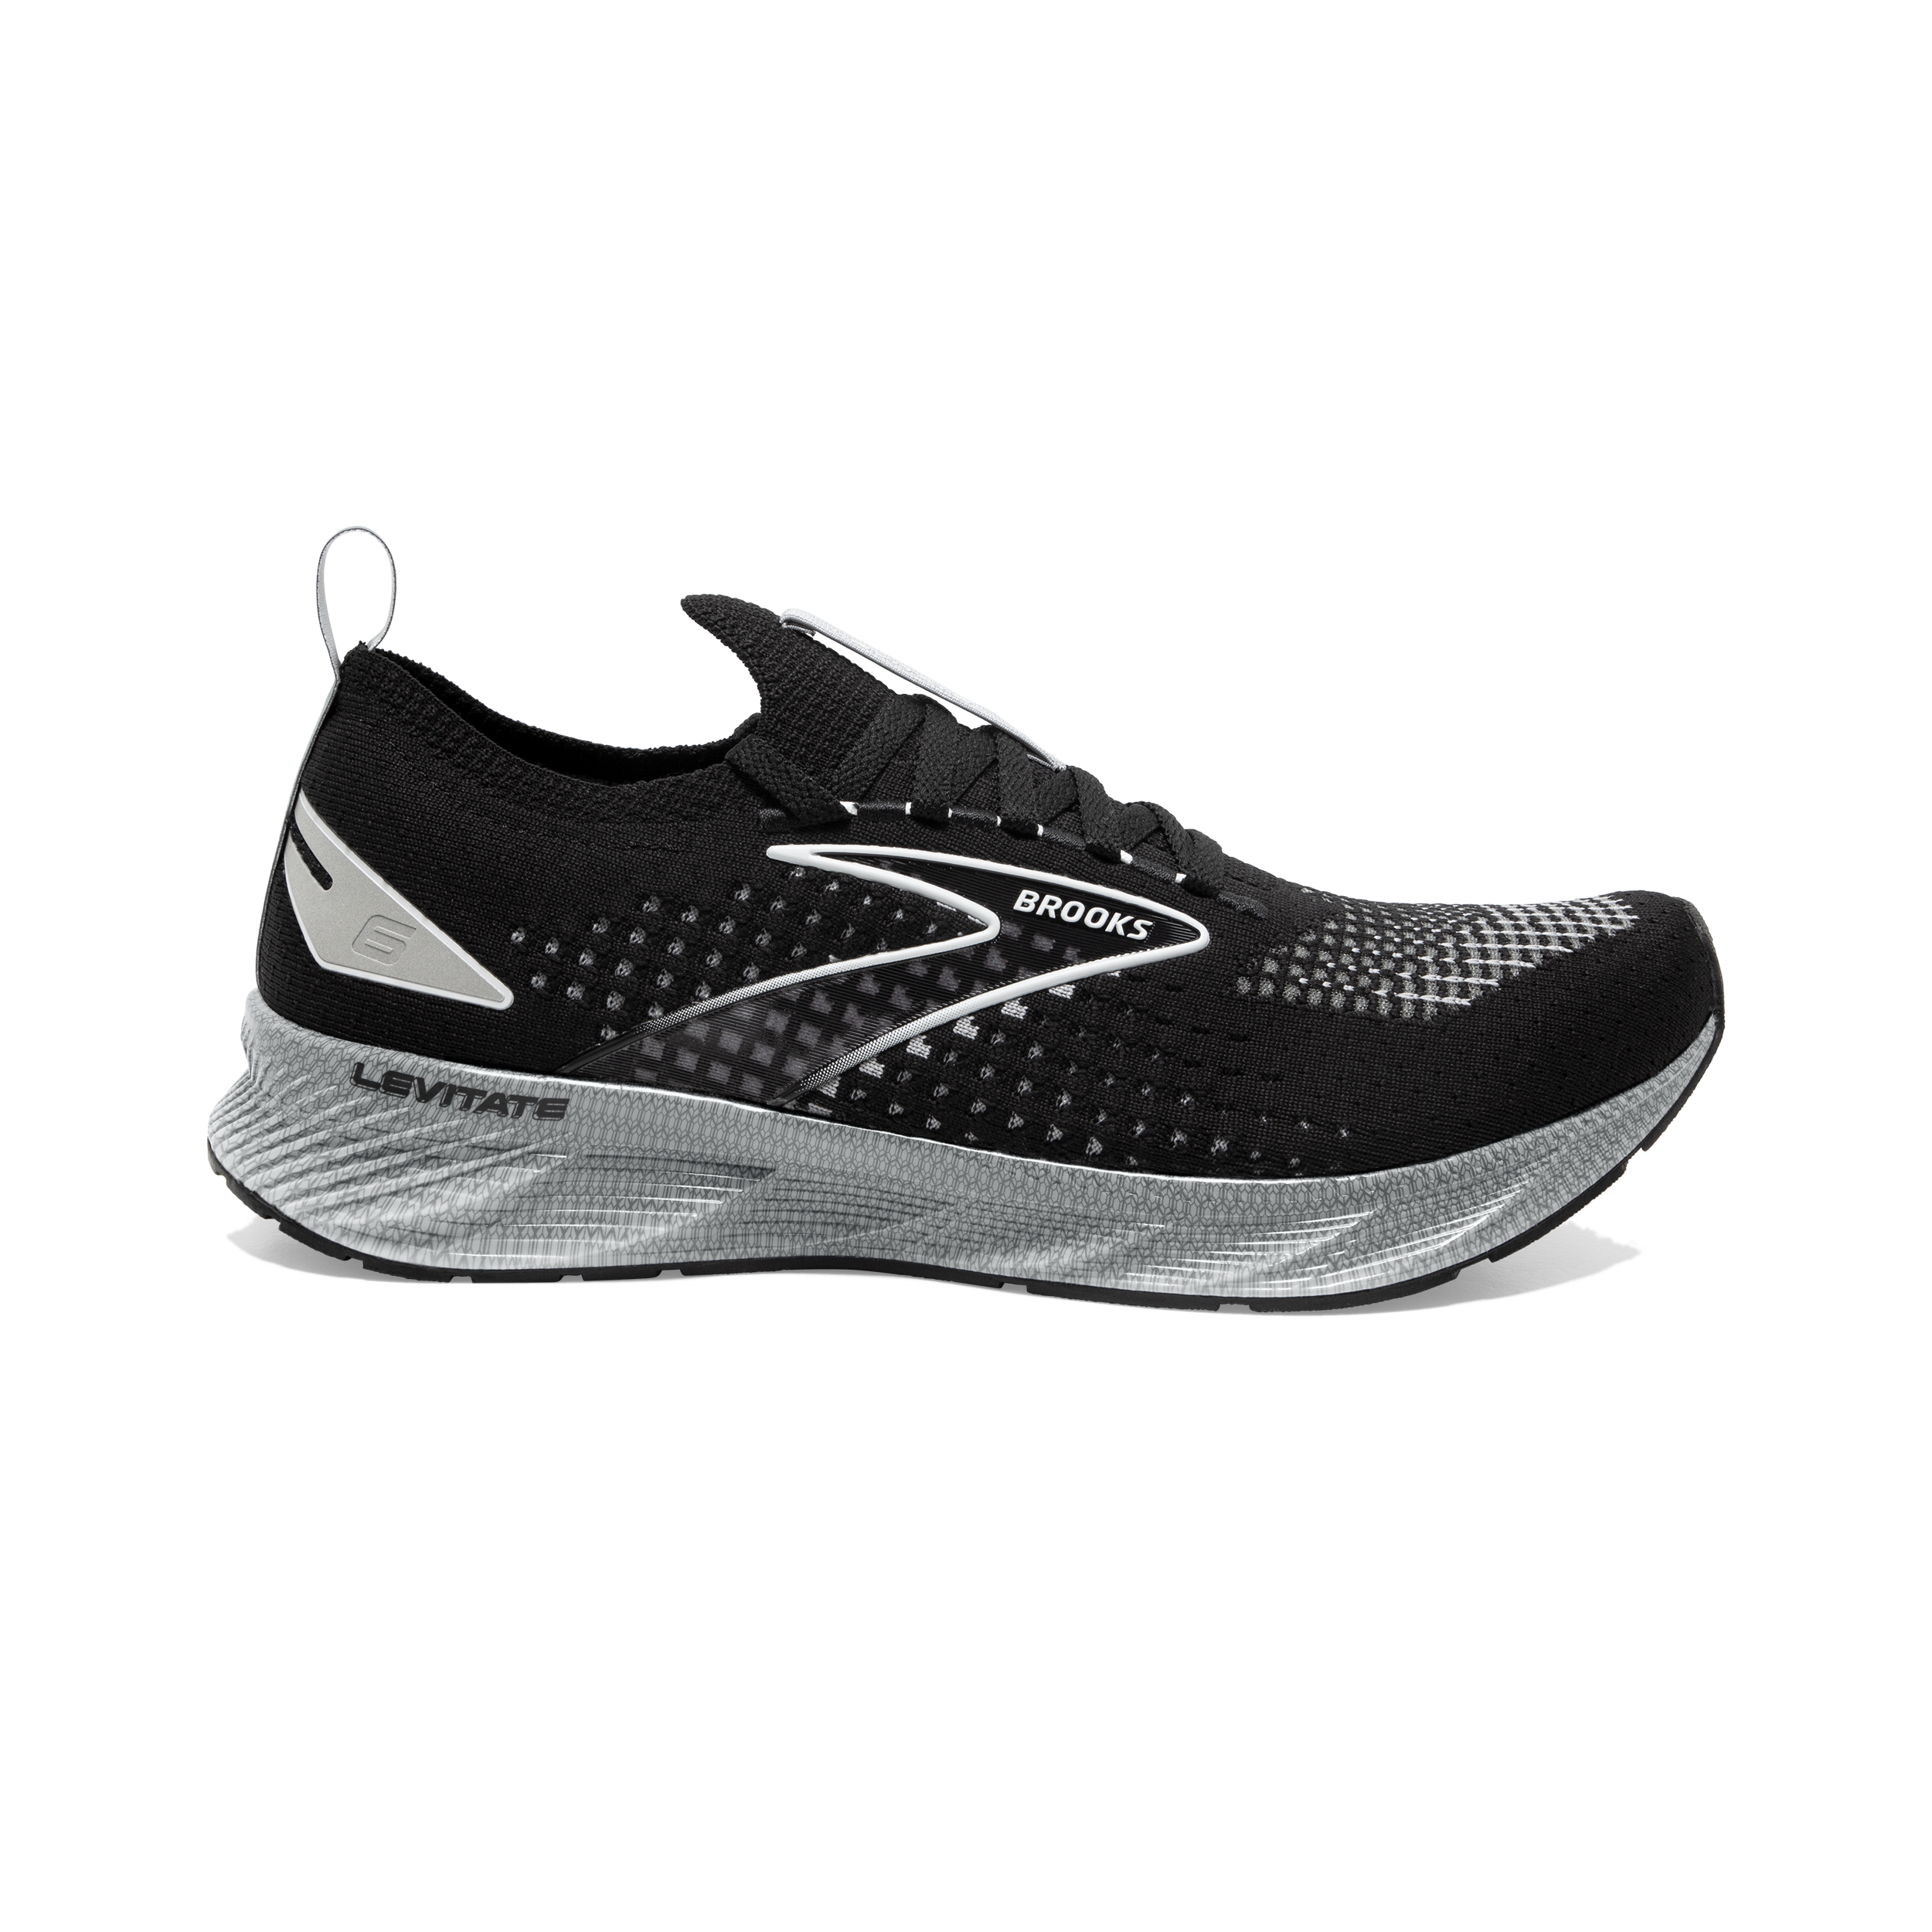 Levitate StealthFit 6 Men's Shoes | Men's Road Running Shoes